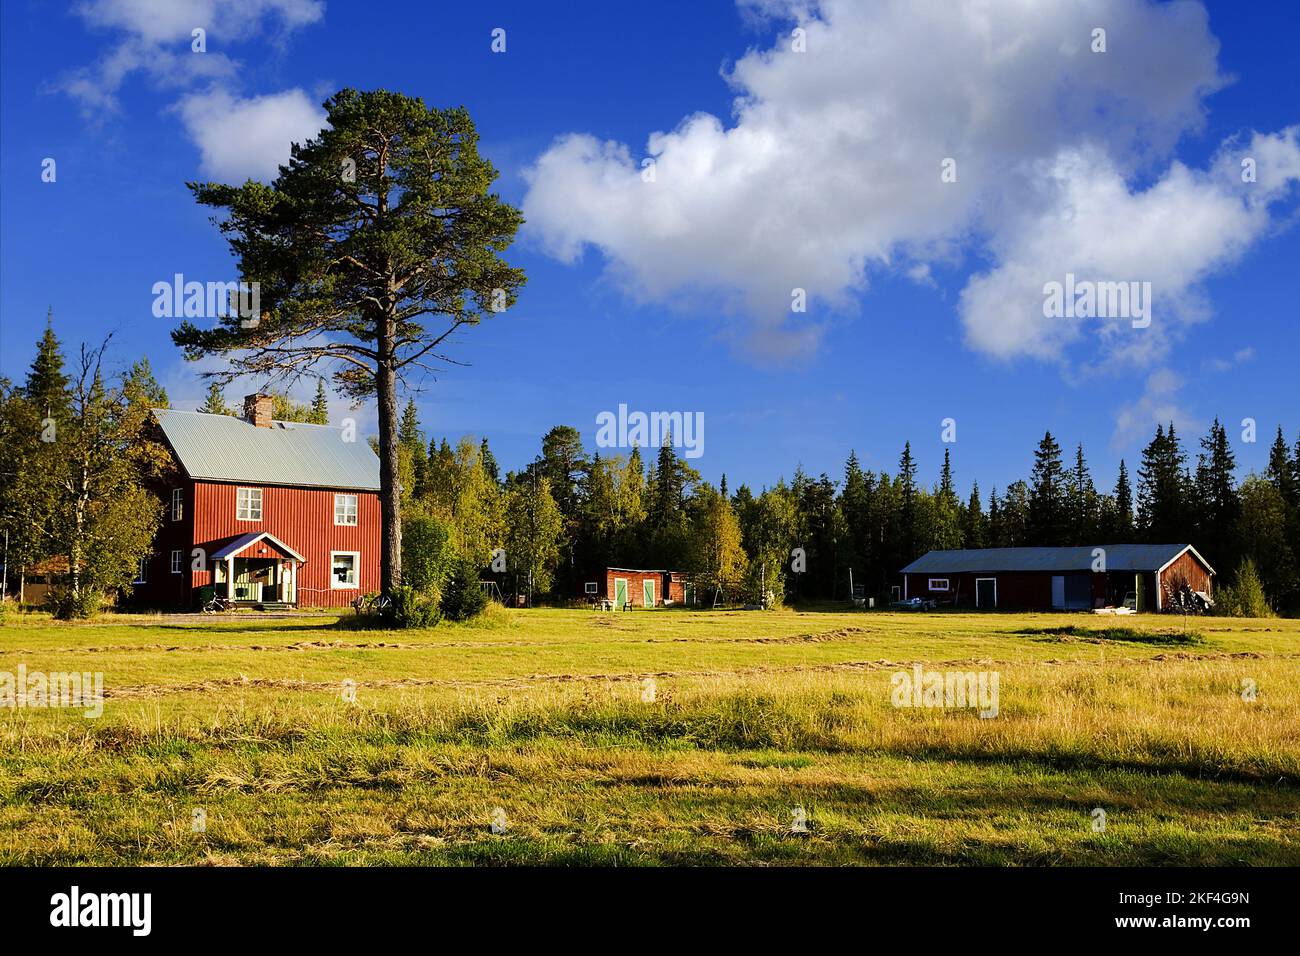 Schweden - Lappland - typische Landschaft mit Holzhaus Stock Photo